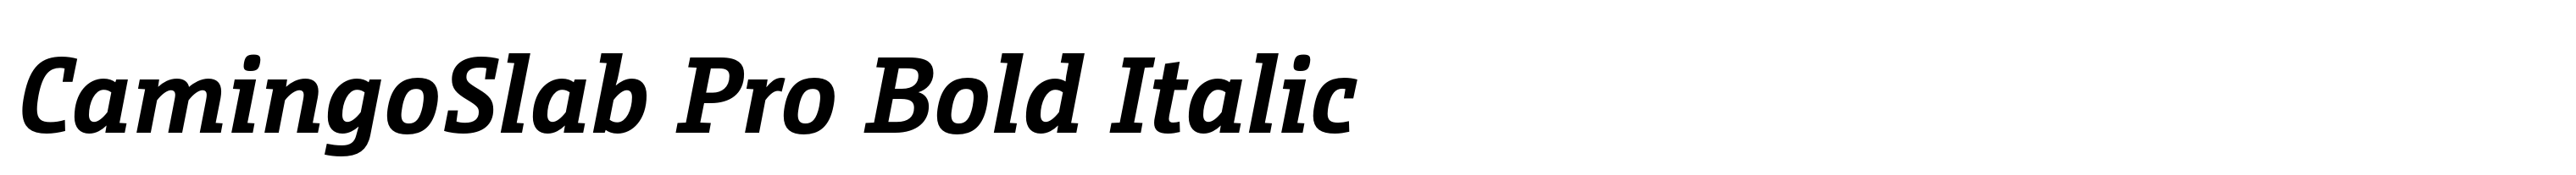 CamingoSlab Pro Bold Italic